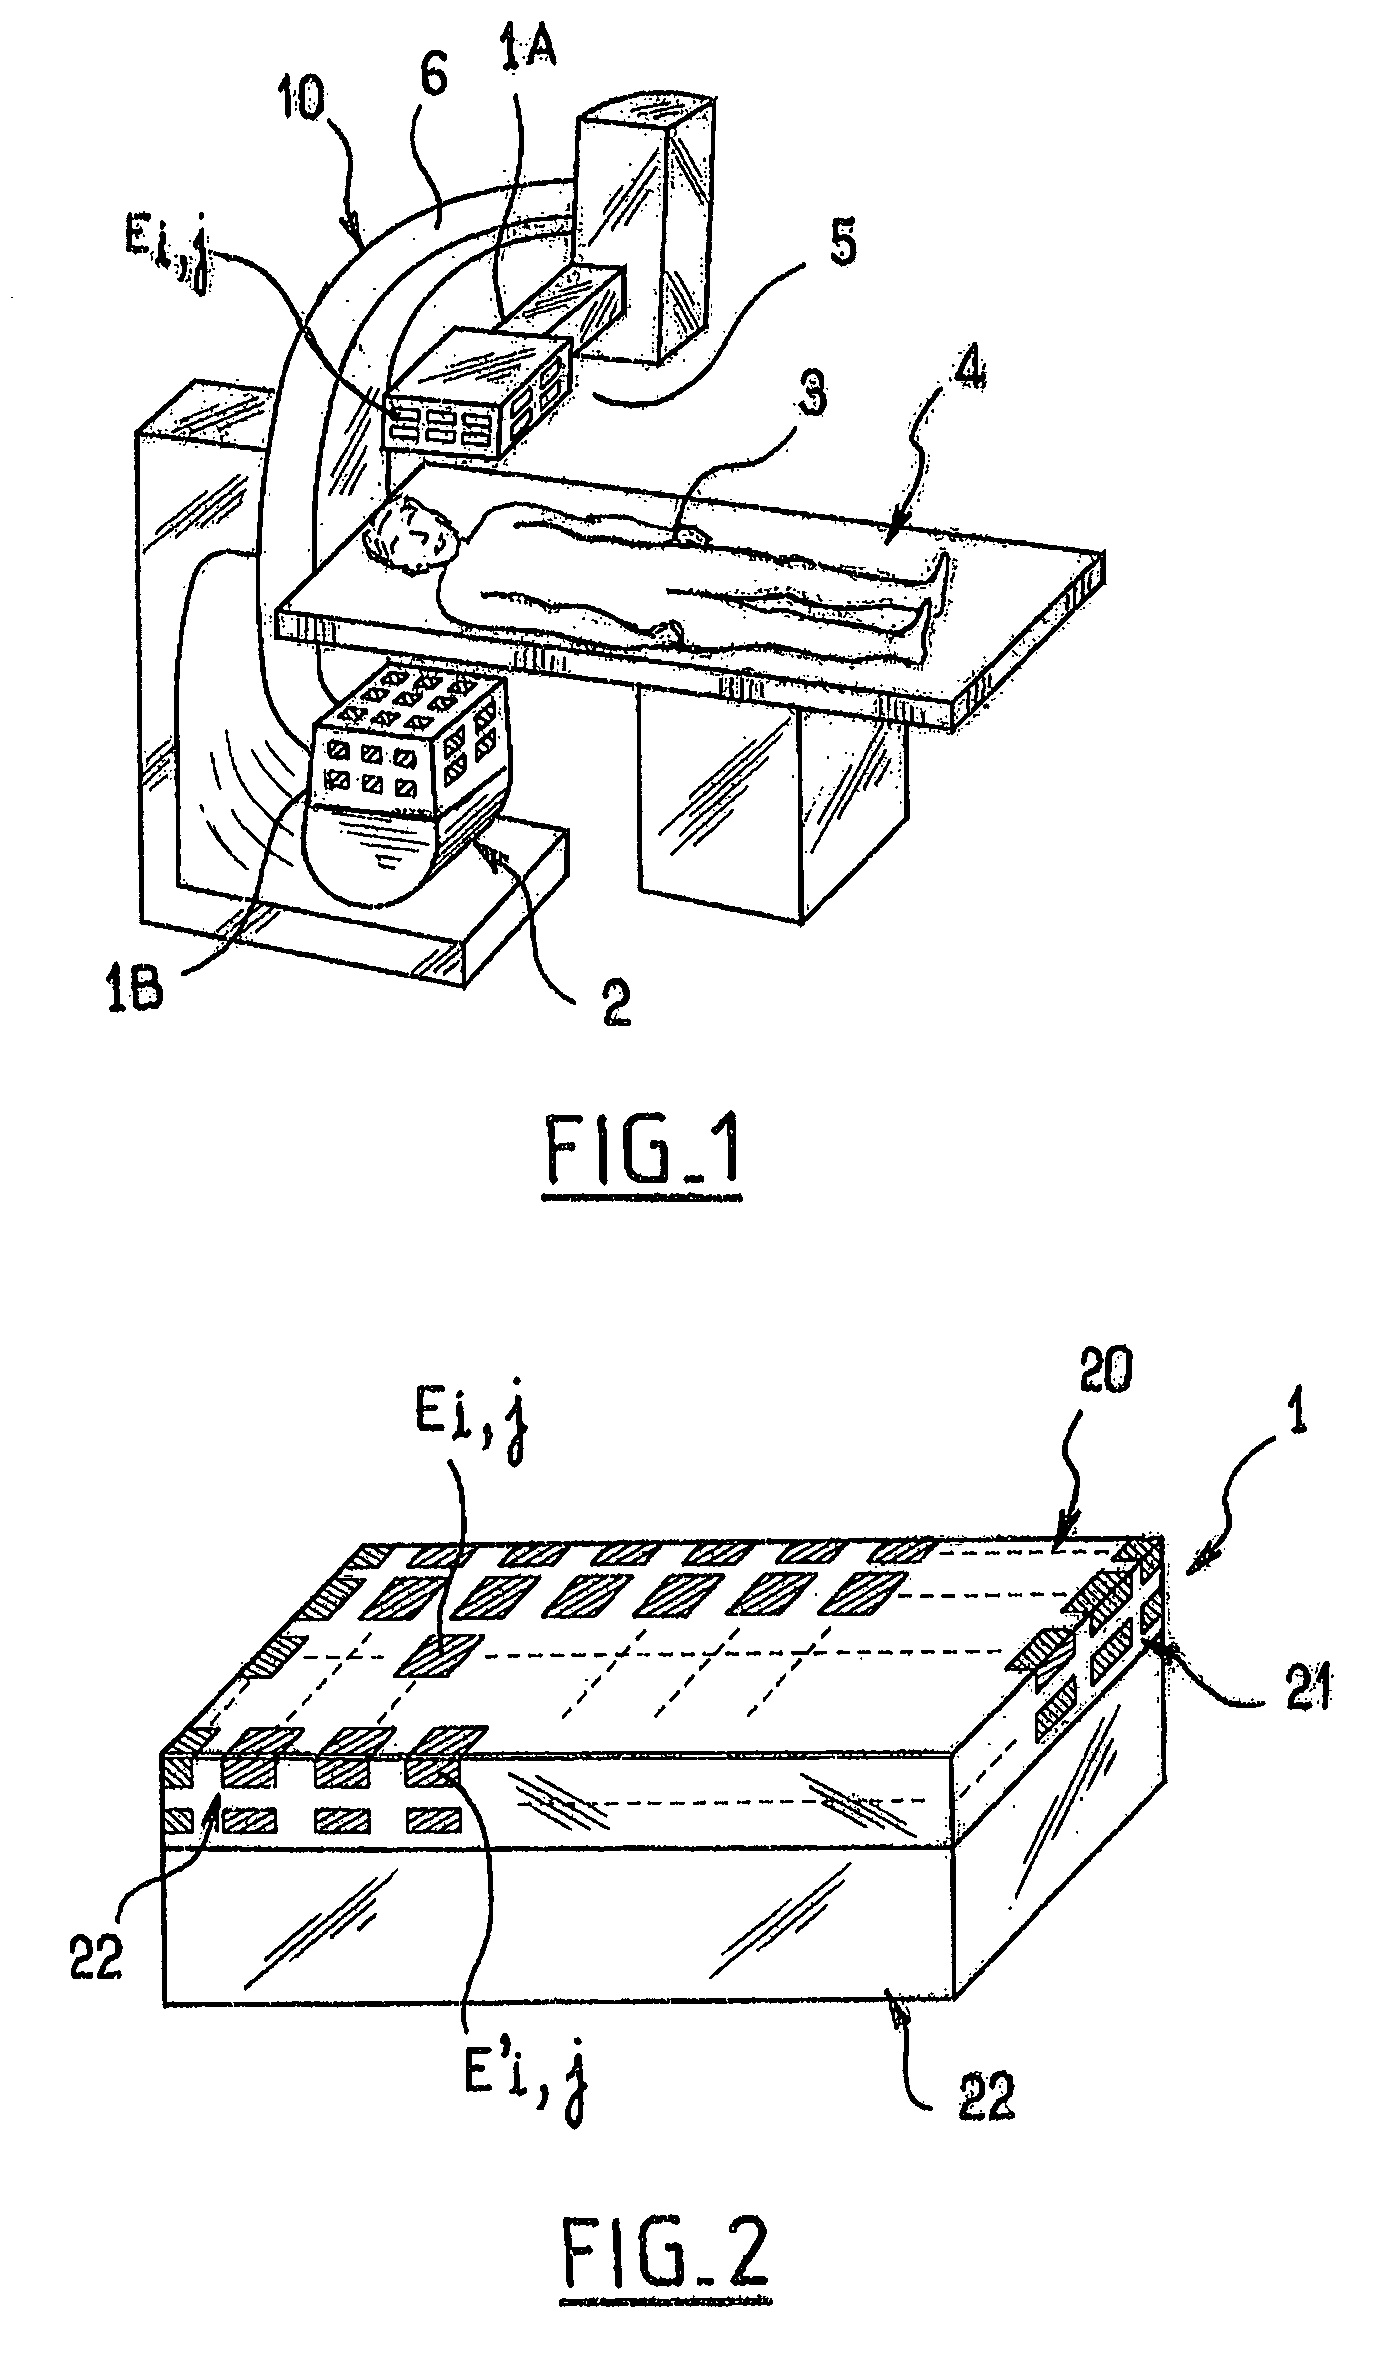 Proximity detector comprising capacitive sensor